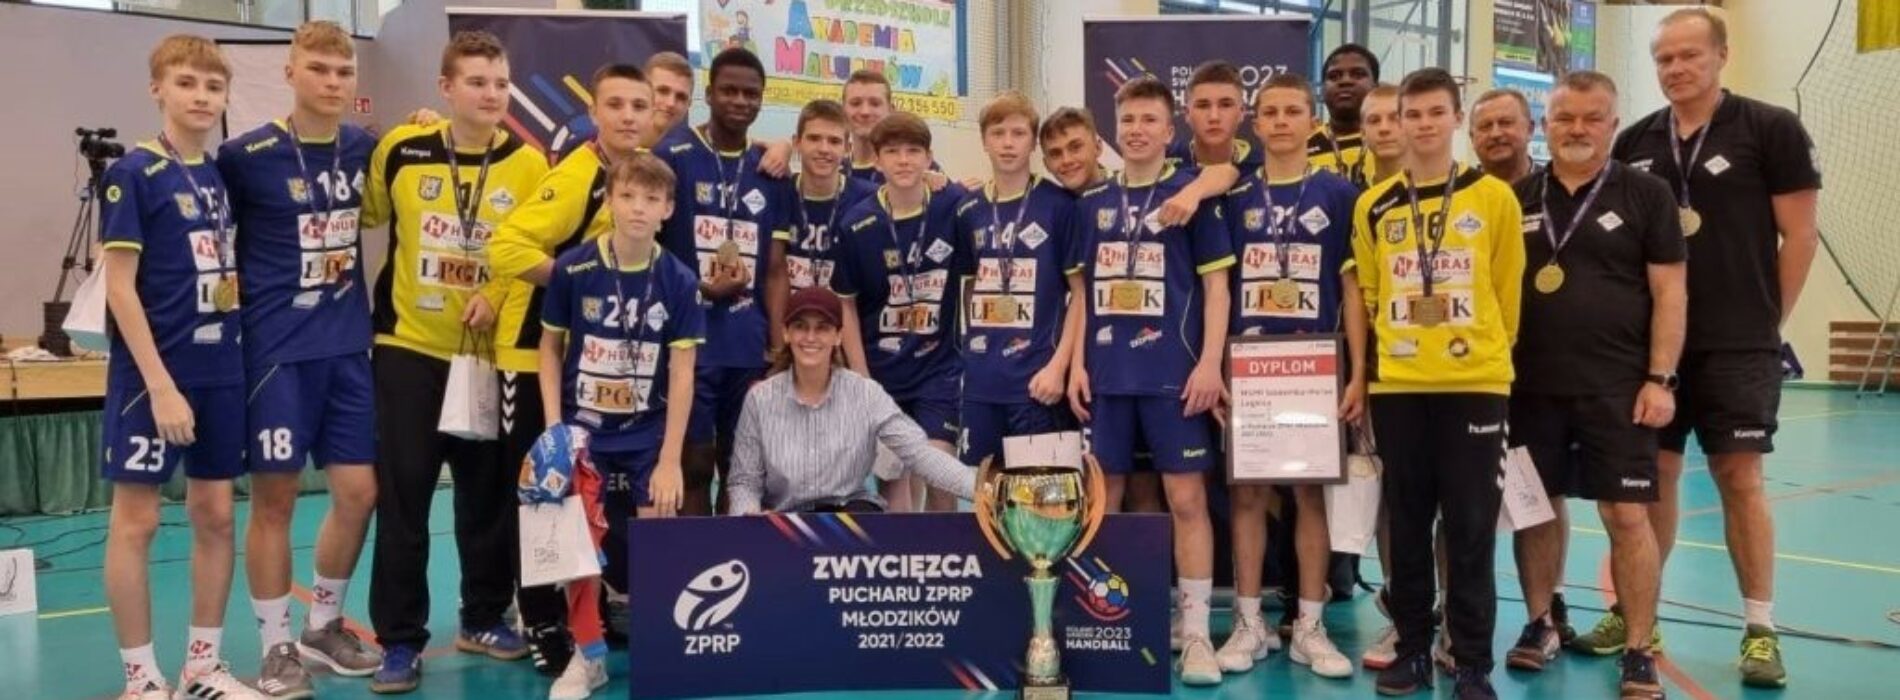 Siódemka Huras Legnica mistrzem Polski młodzików! Gratulujemy